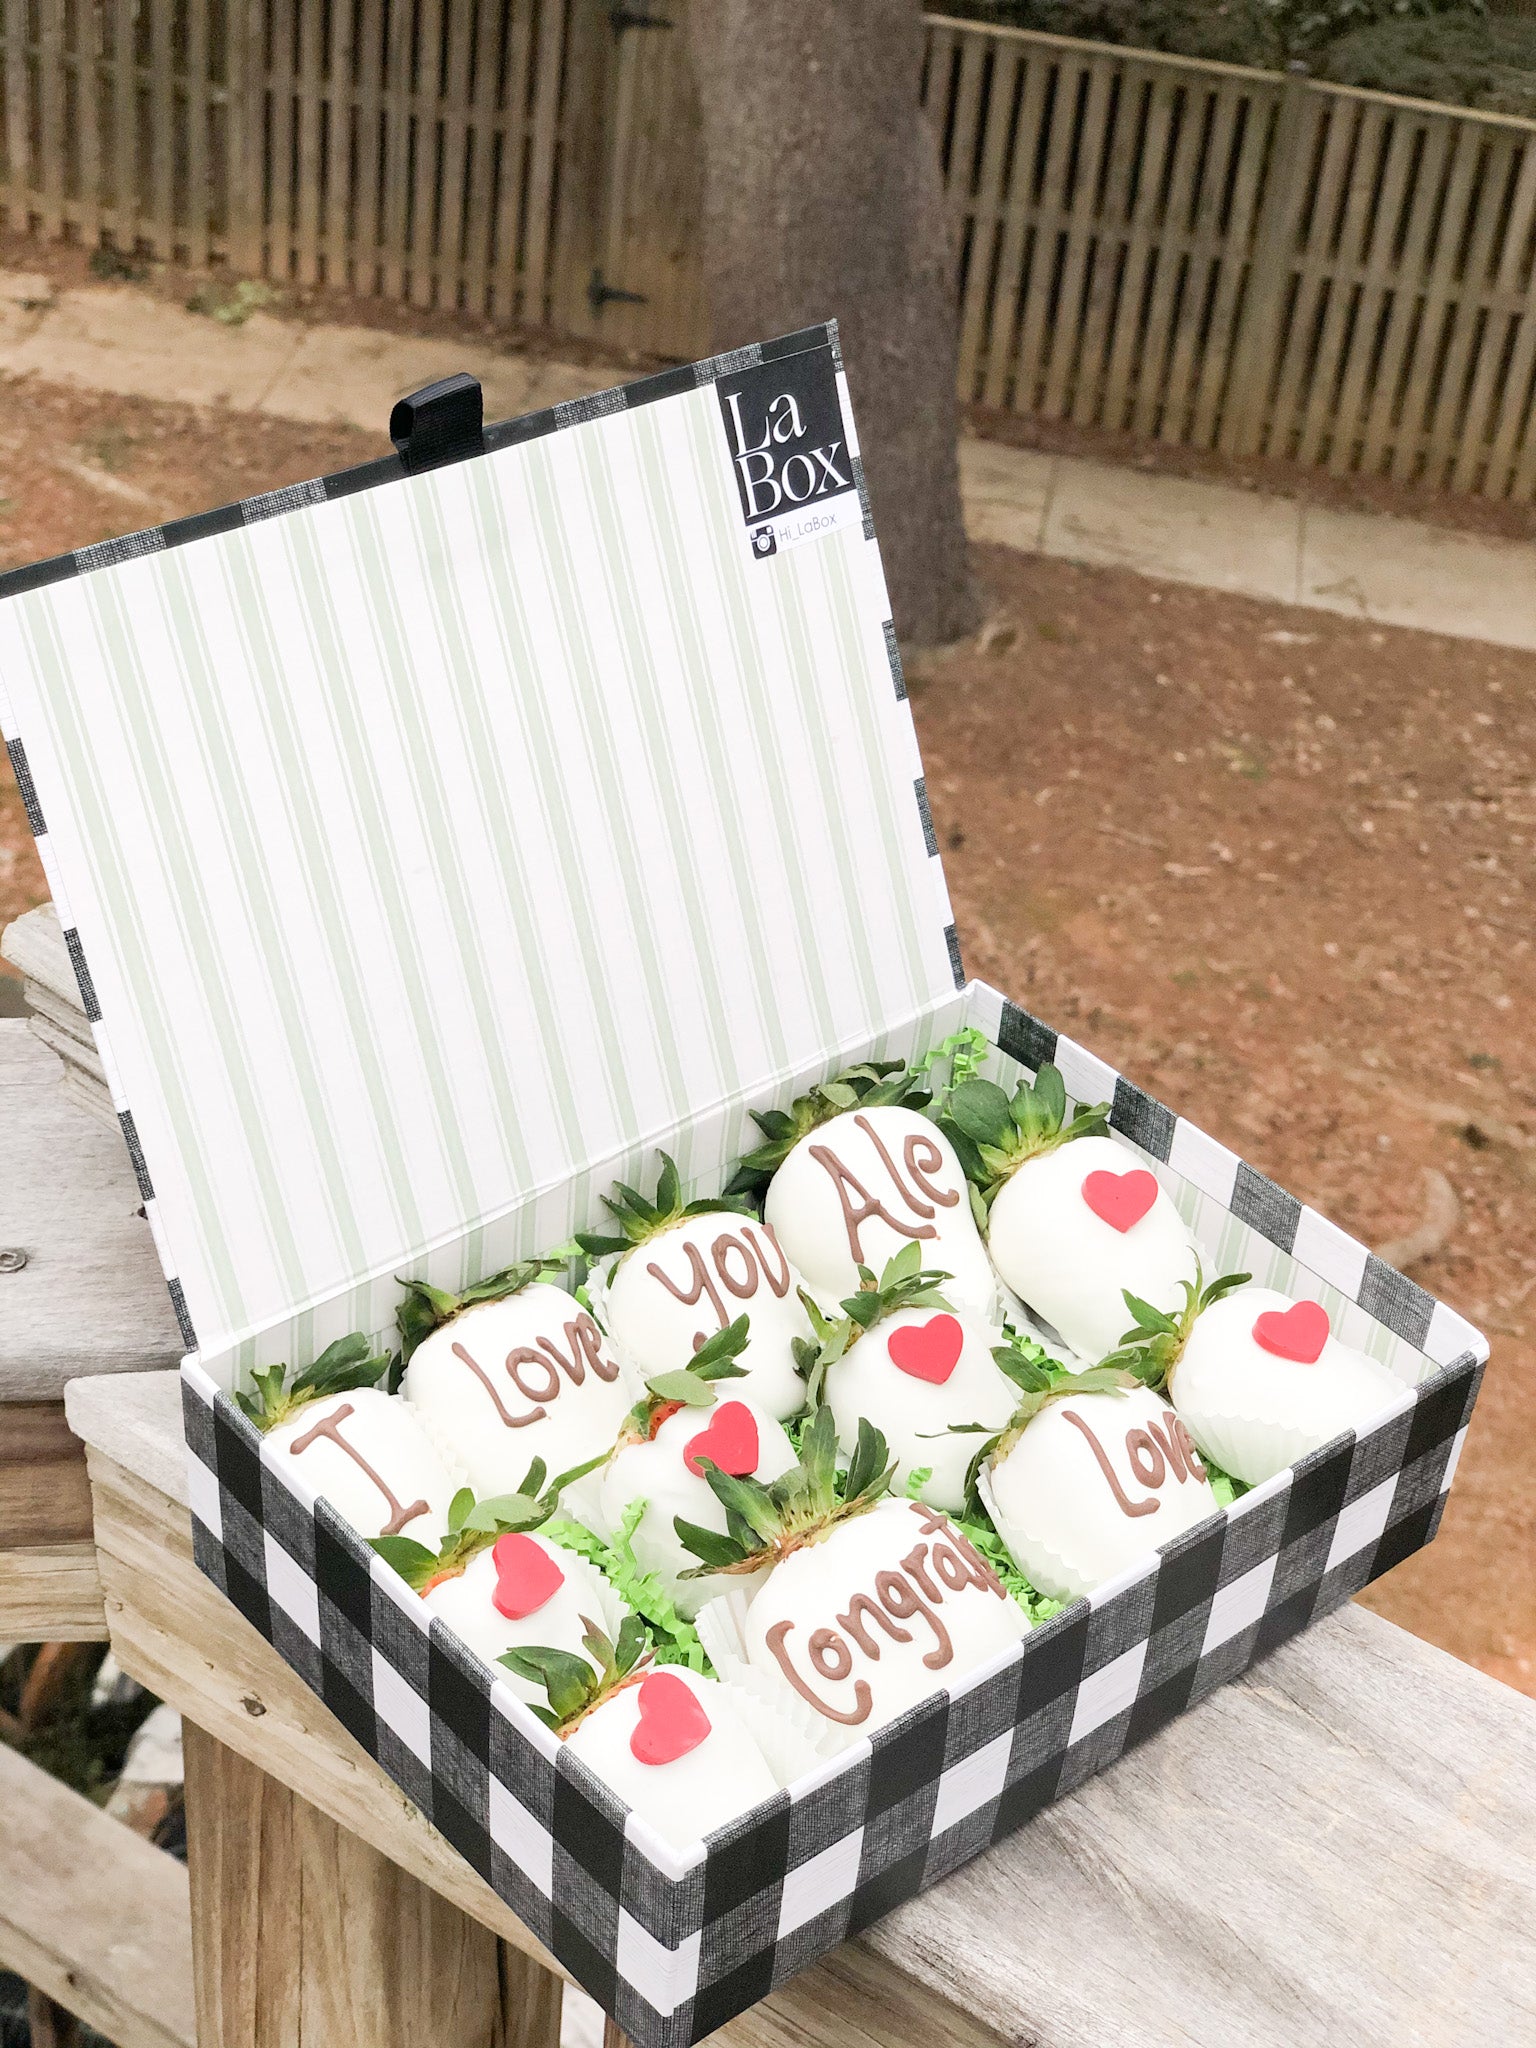 Box of 12 Strawberries